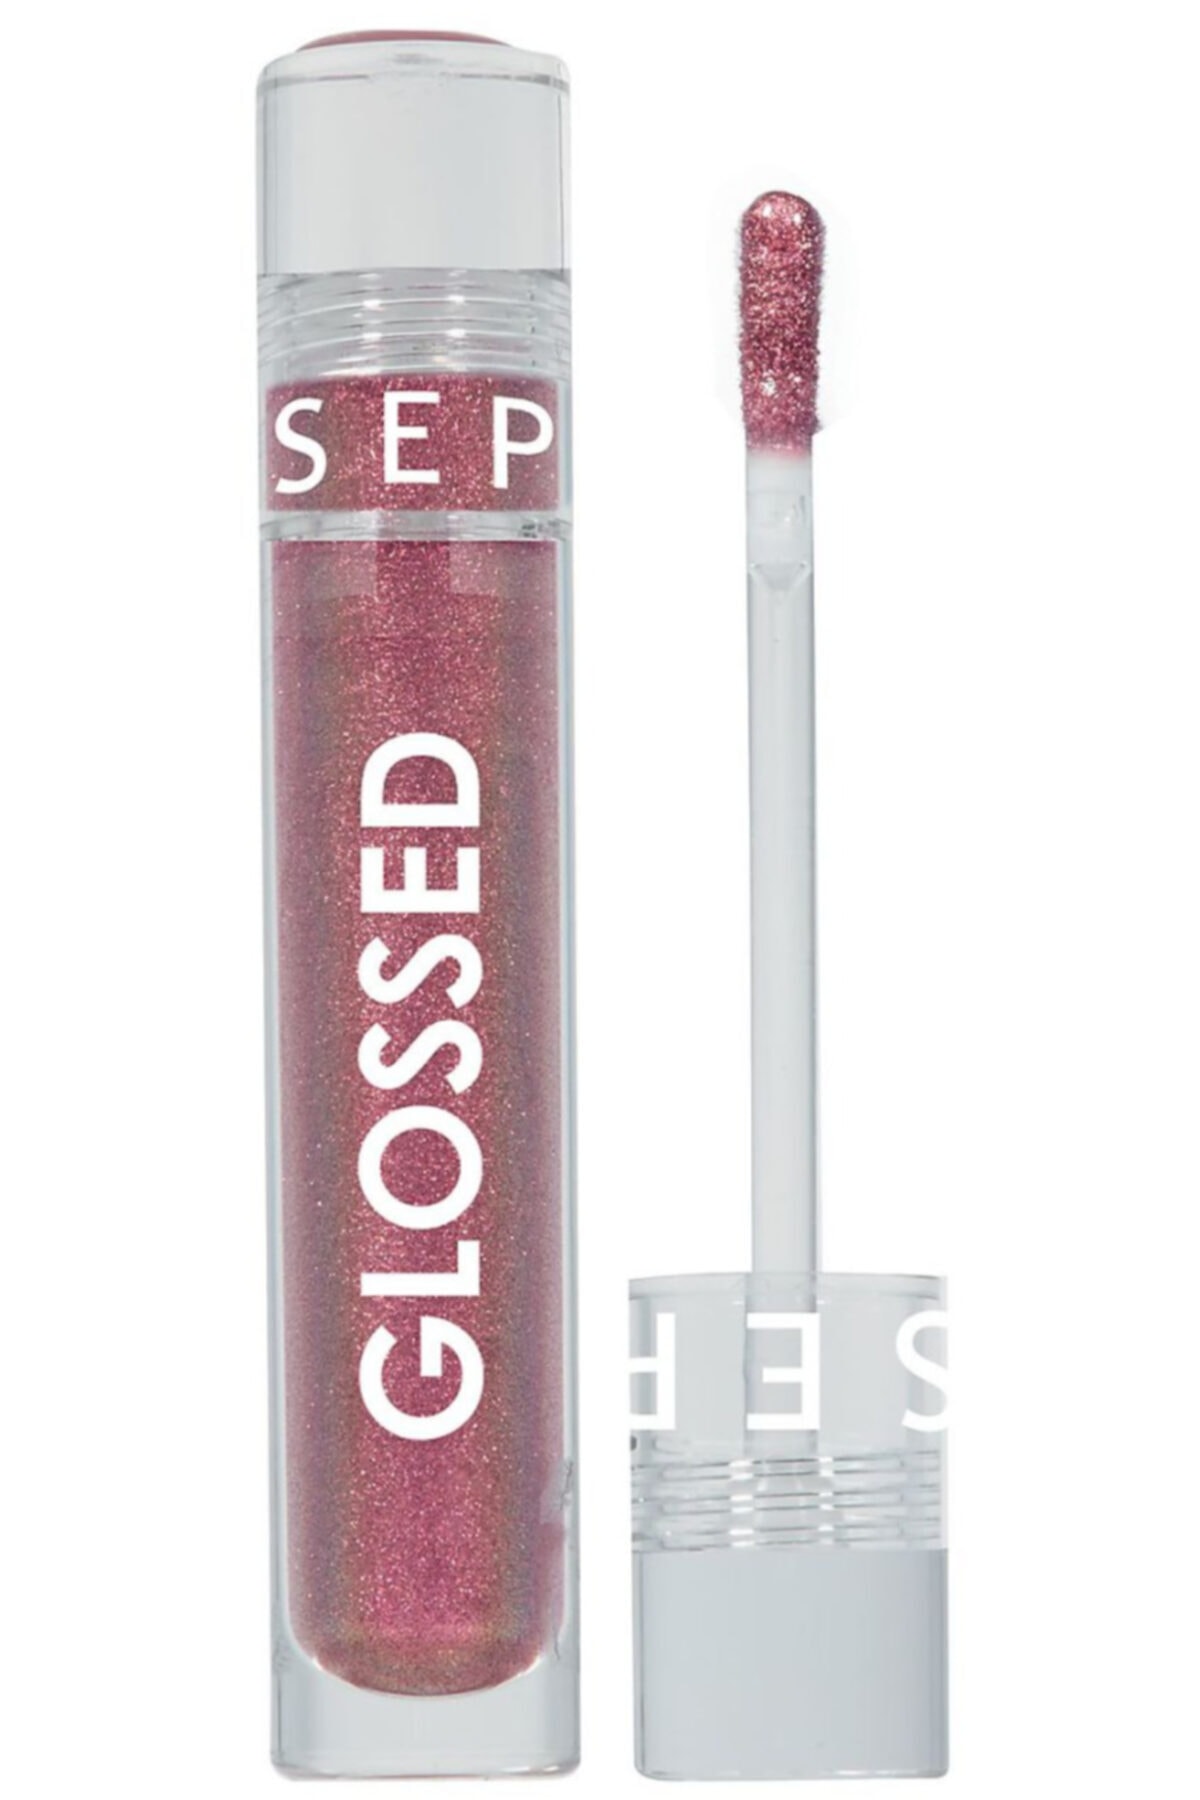 SEPHORA Glossed Lip Gloss